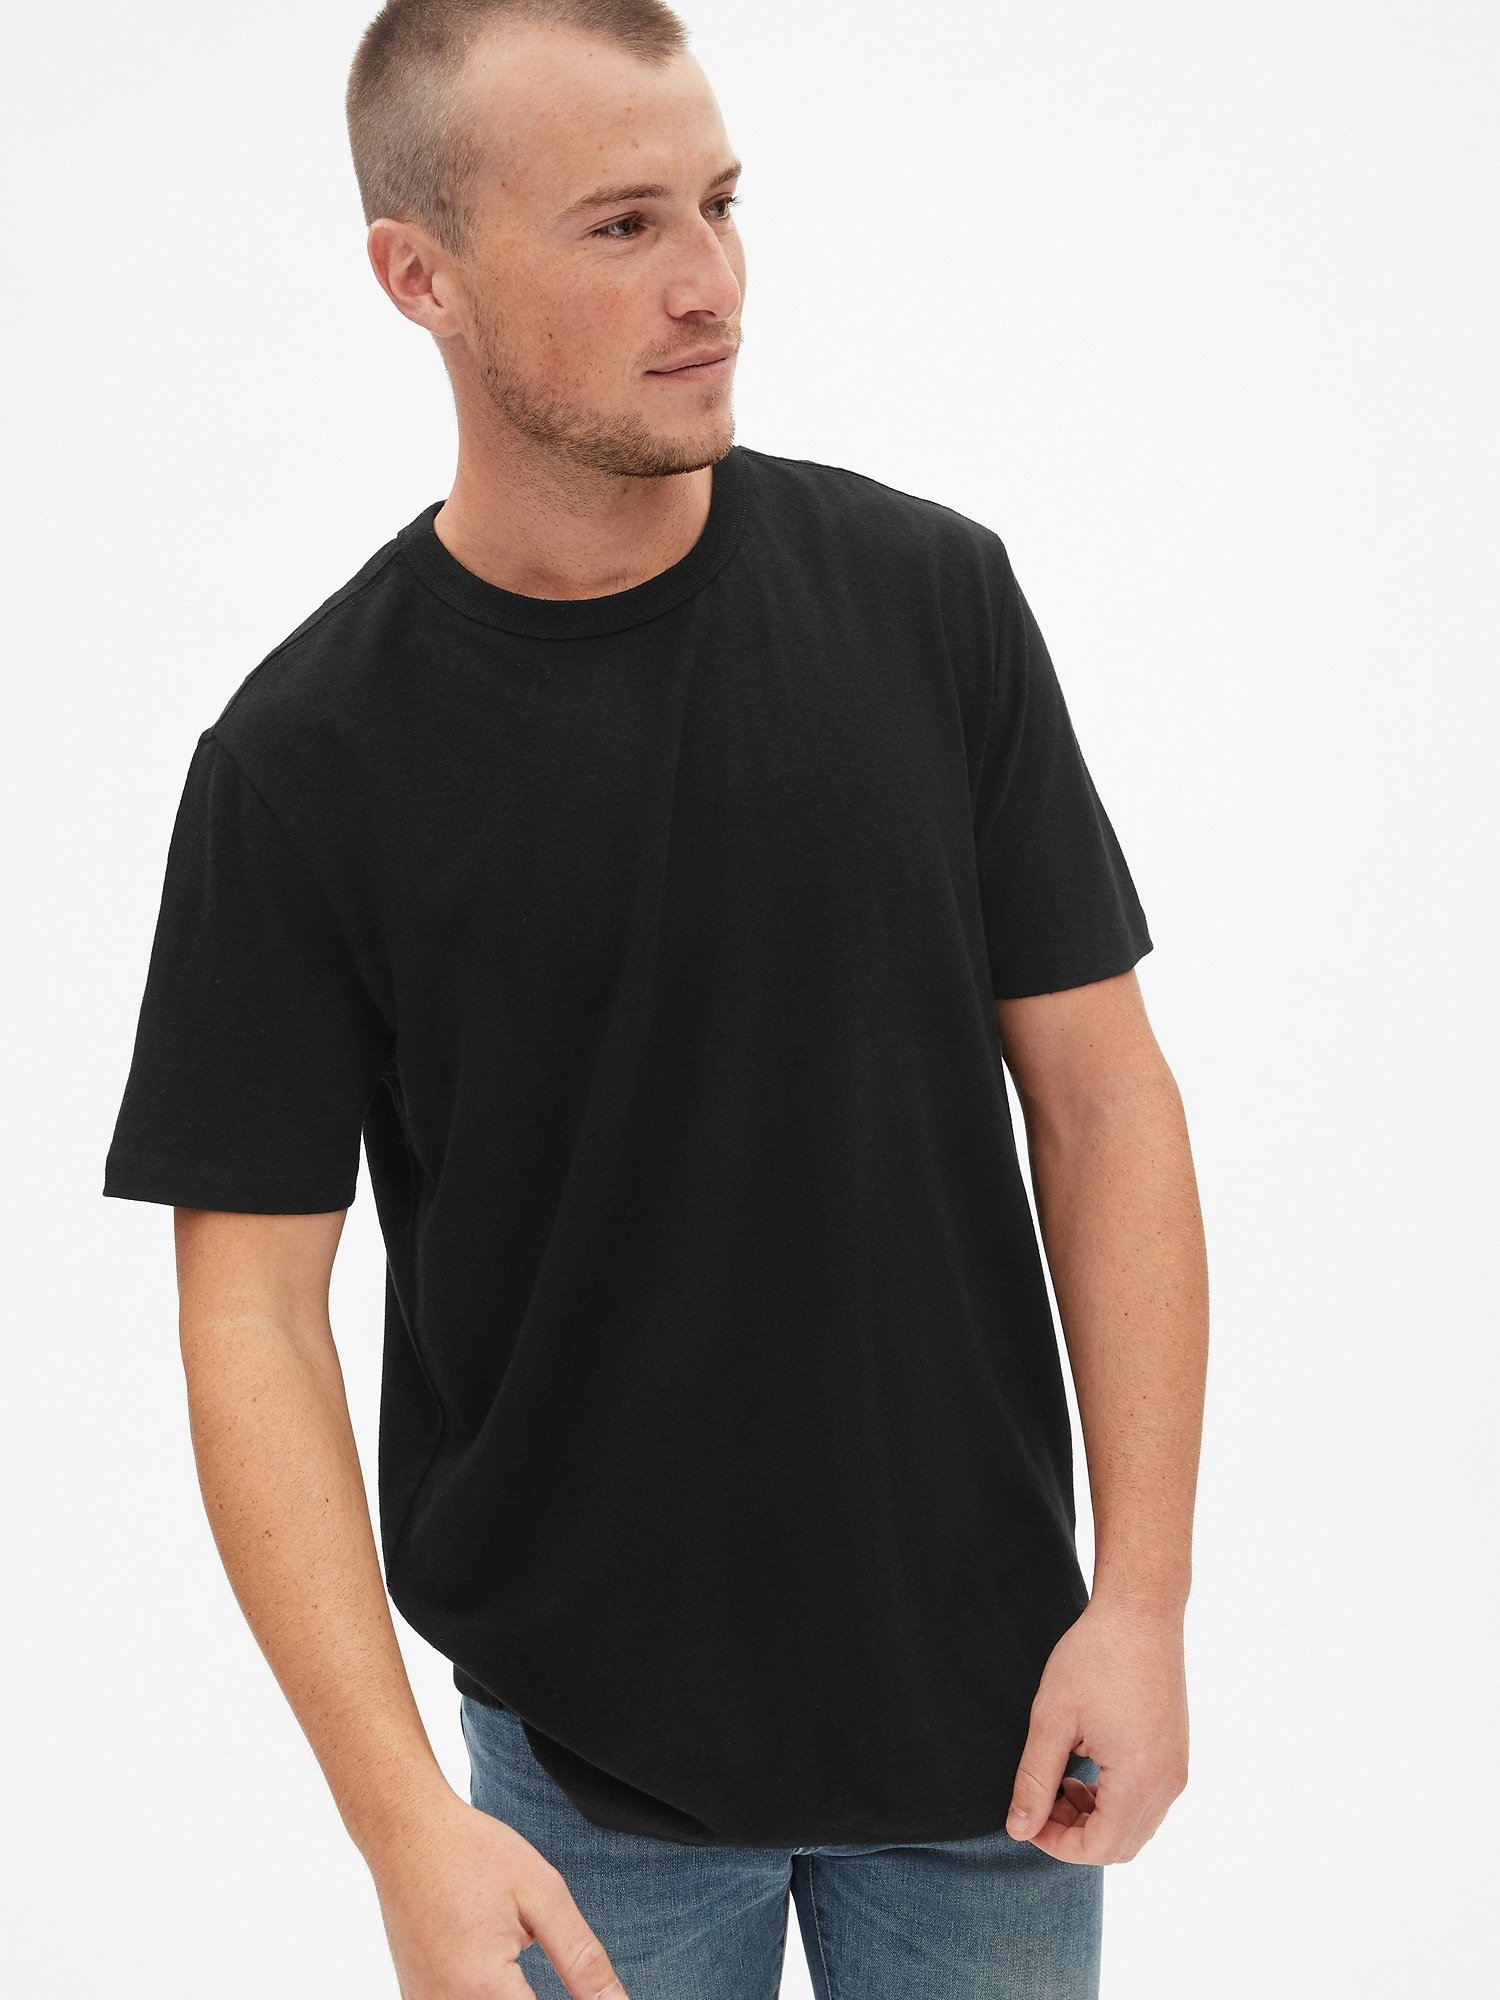 Erkek Sıfır Yaka Kısa Kollu T-Shirt product image